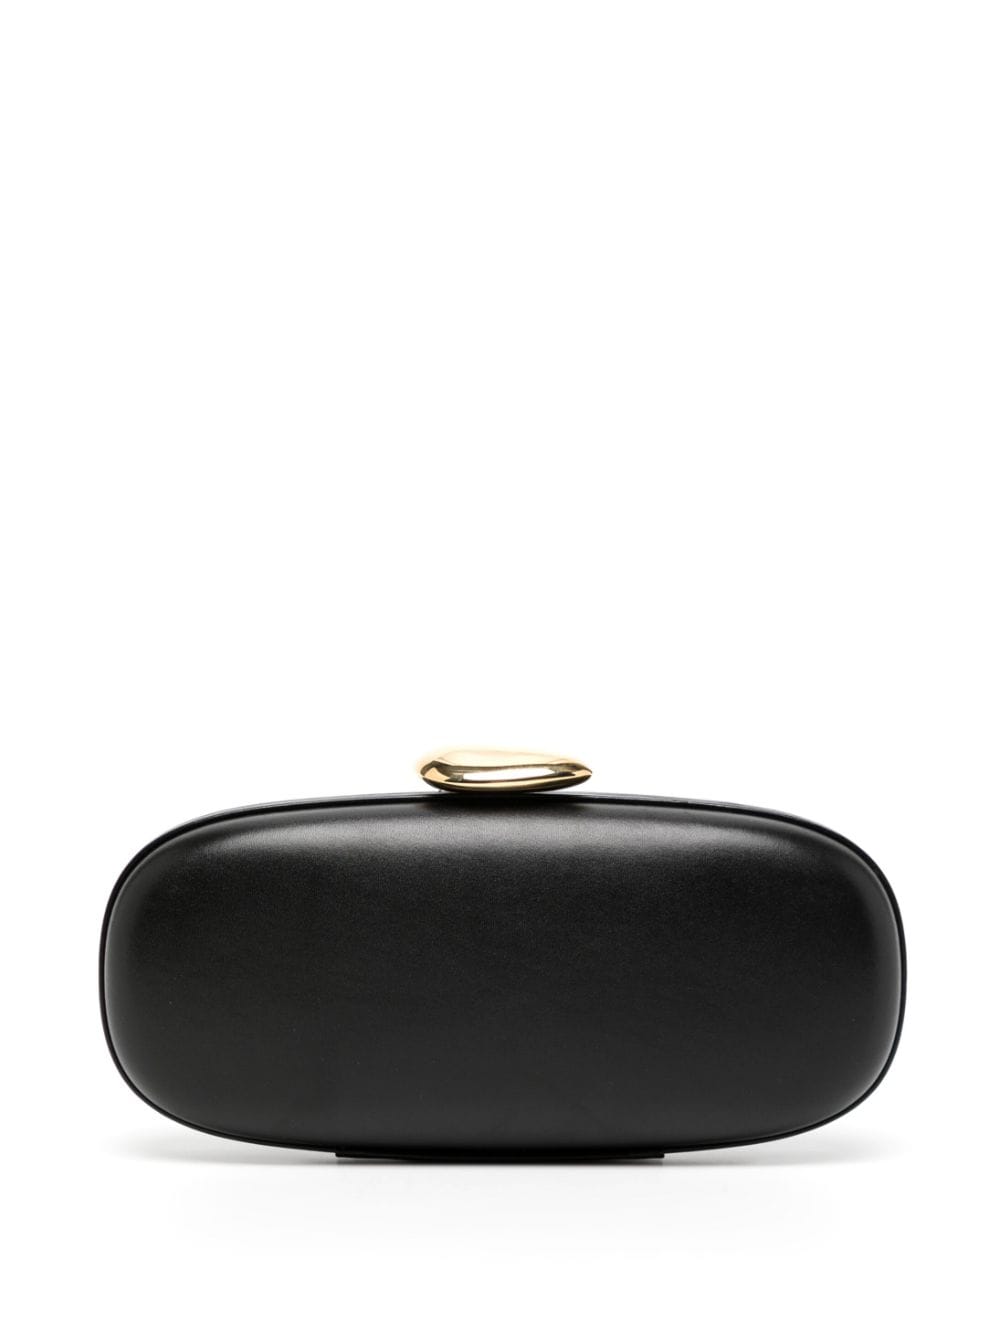 Michael Kors Collection Tina leather mini bag - Black